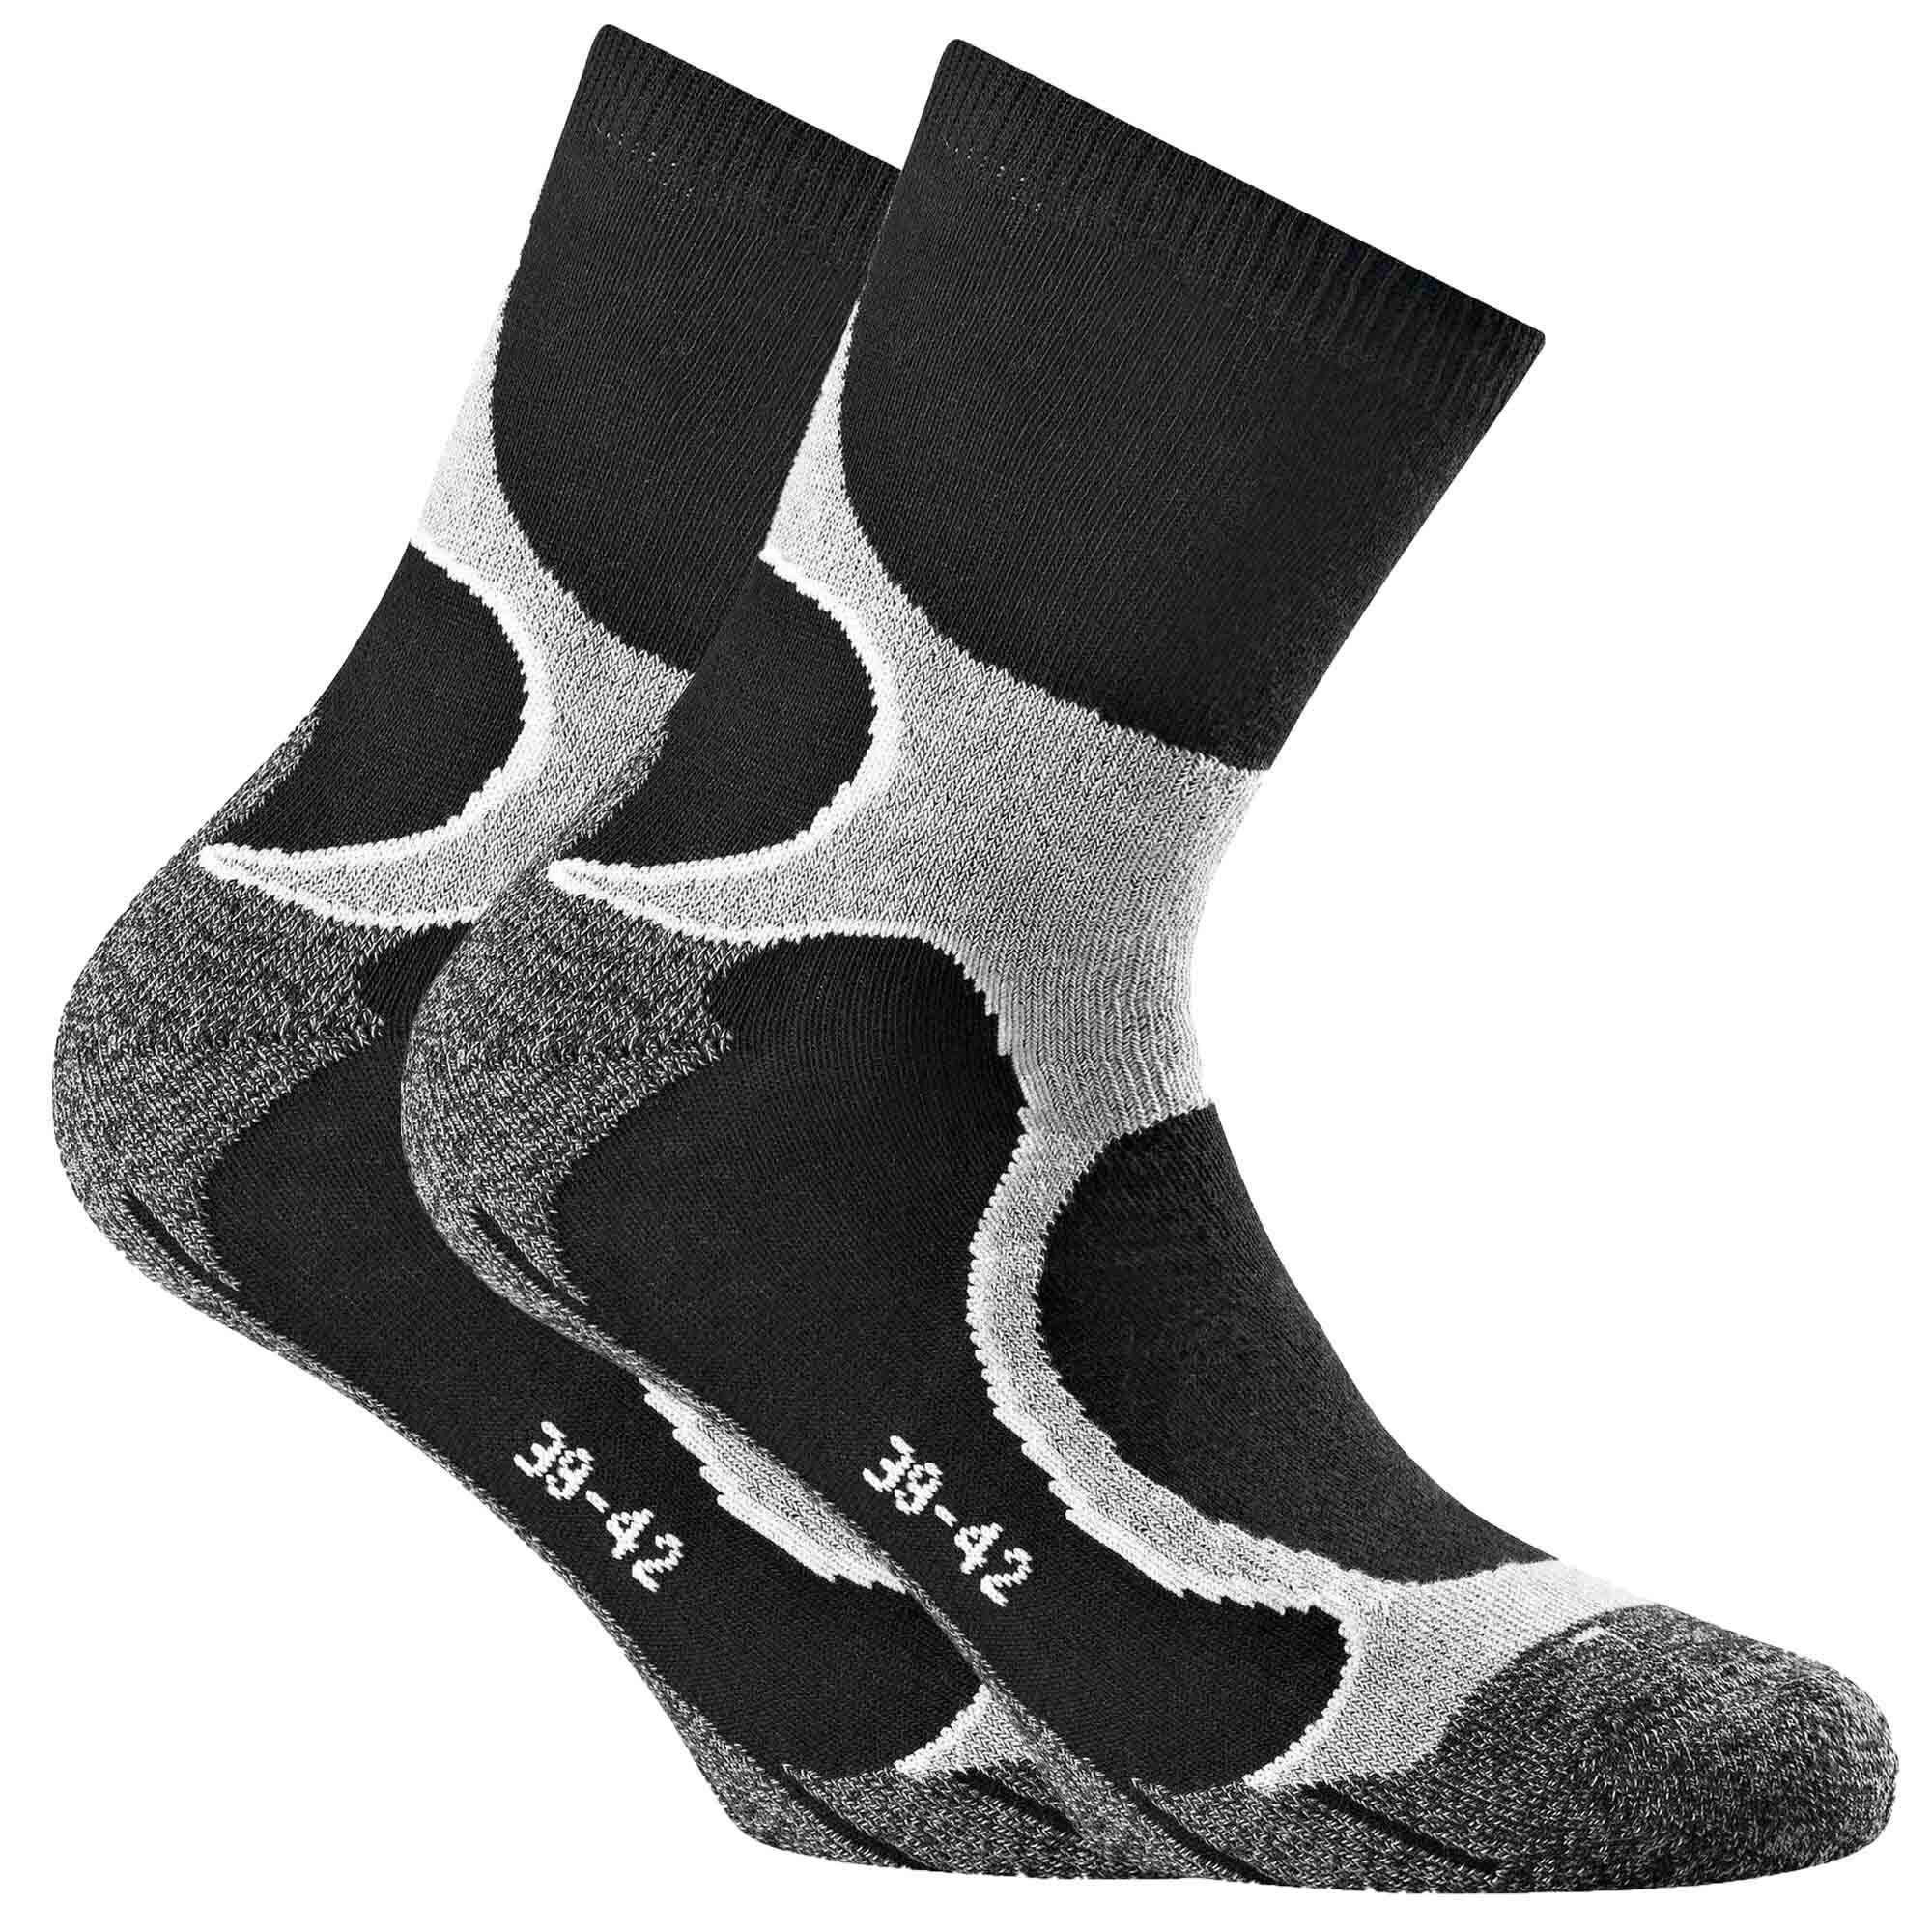 Rohner Socks Sportsocken Unisex Running Quarter Socken, 2er Pack - Grau